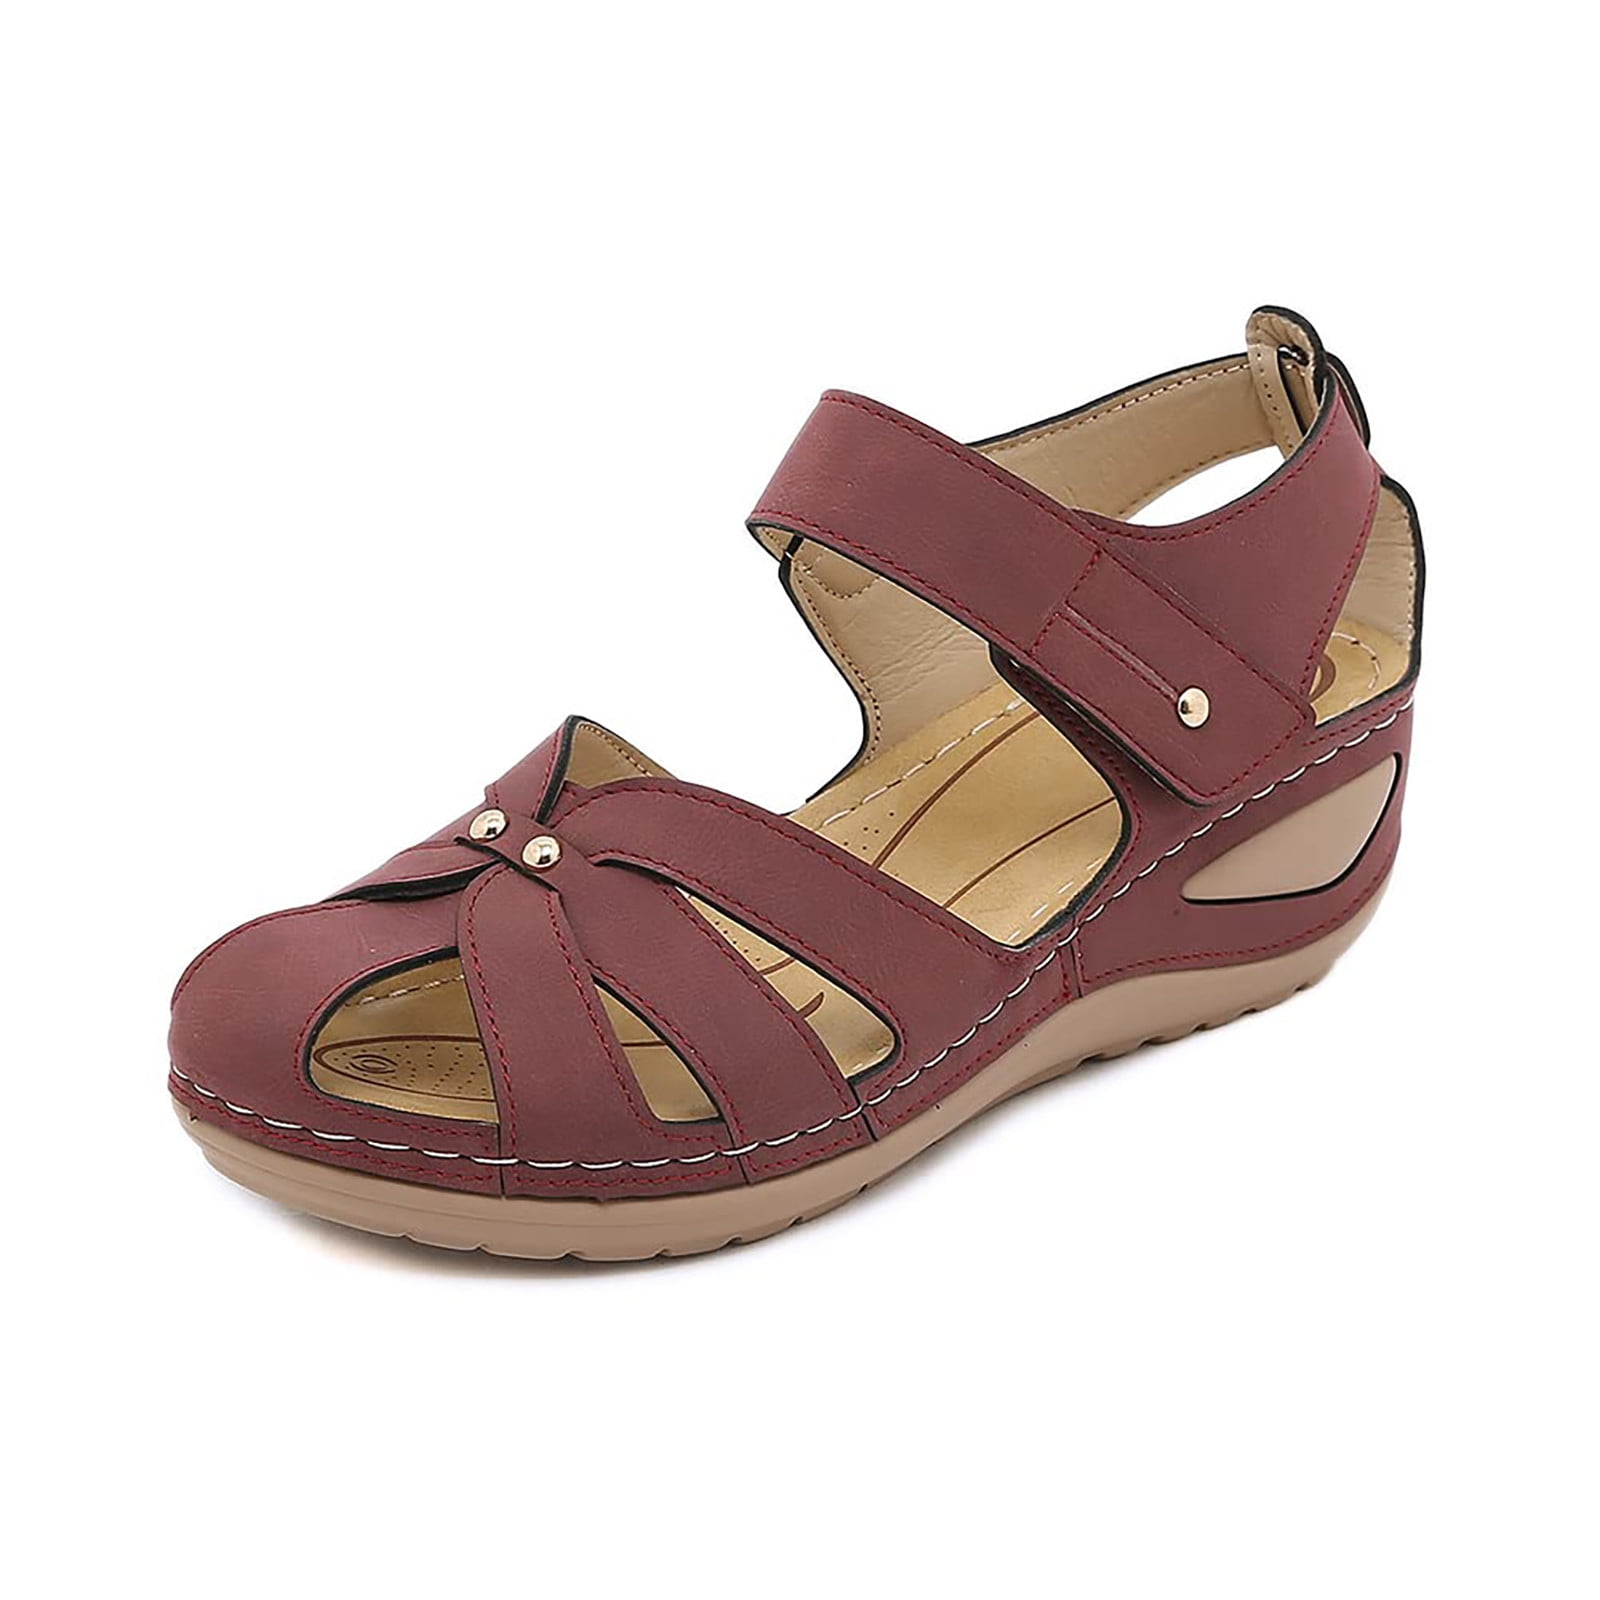 Bata Women's Myra E Flat Sandal : Amazon.in: Fashion